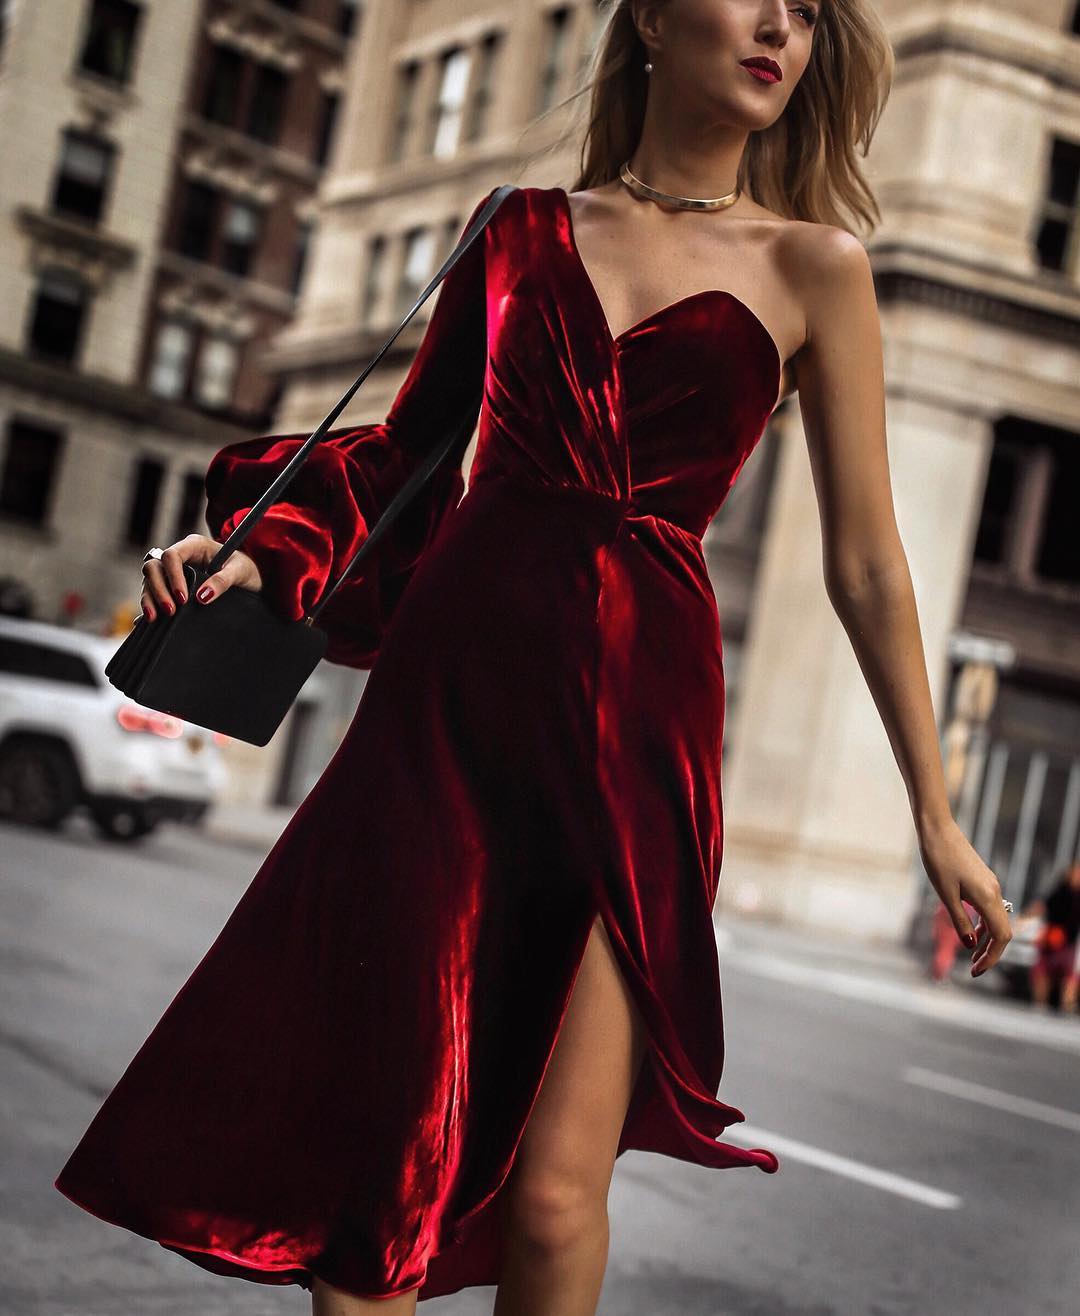 Модні вечірні сукні 2020 року: тренди, новинки сезону, фото